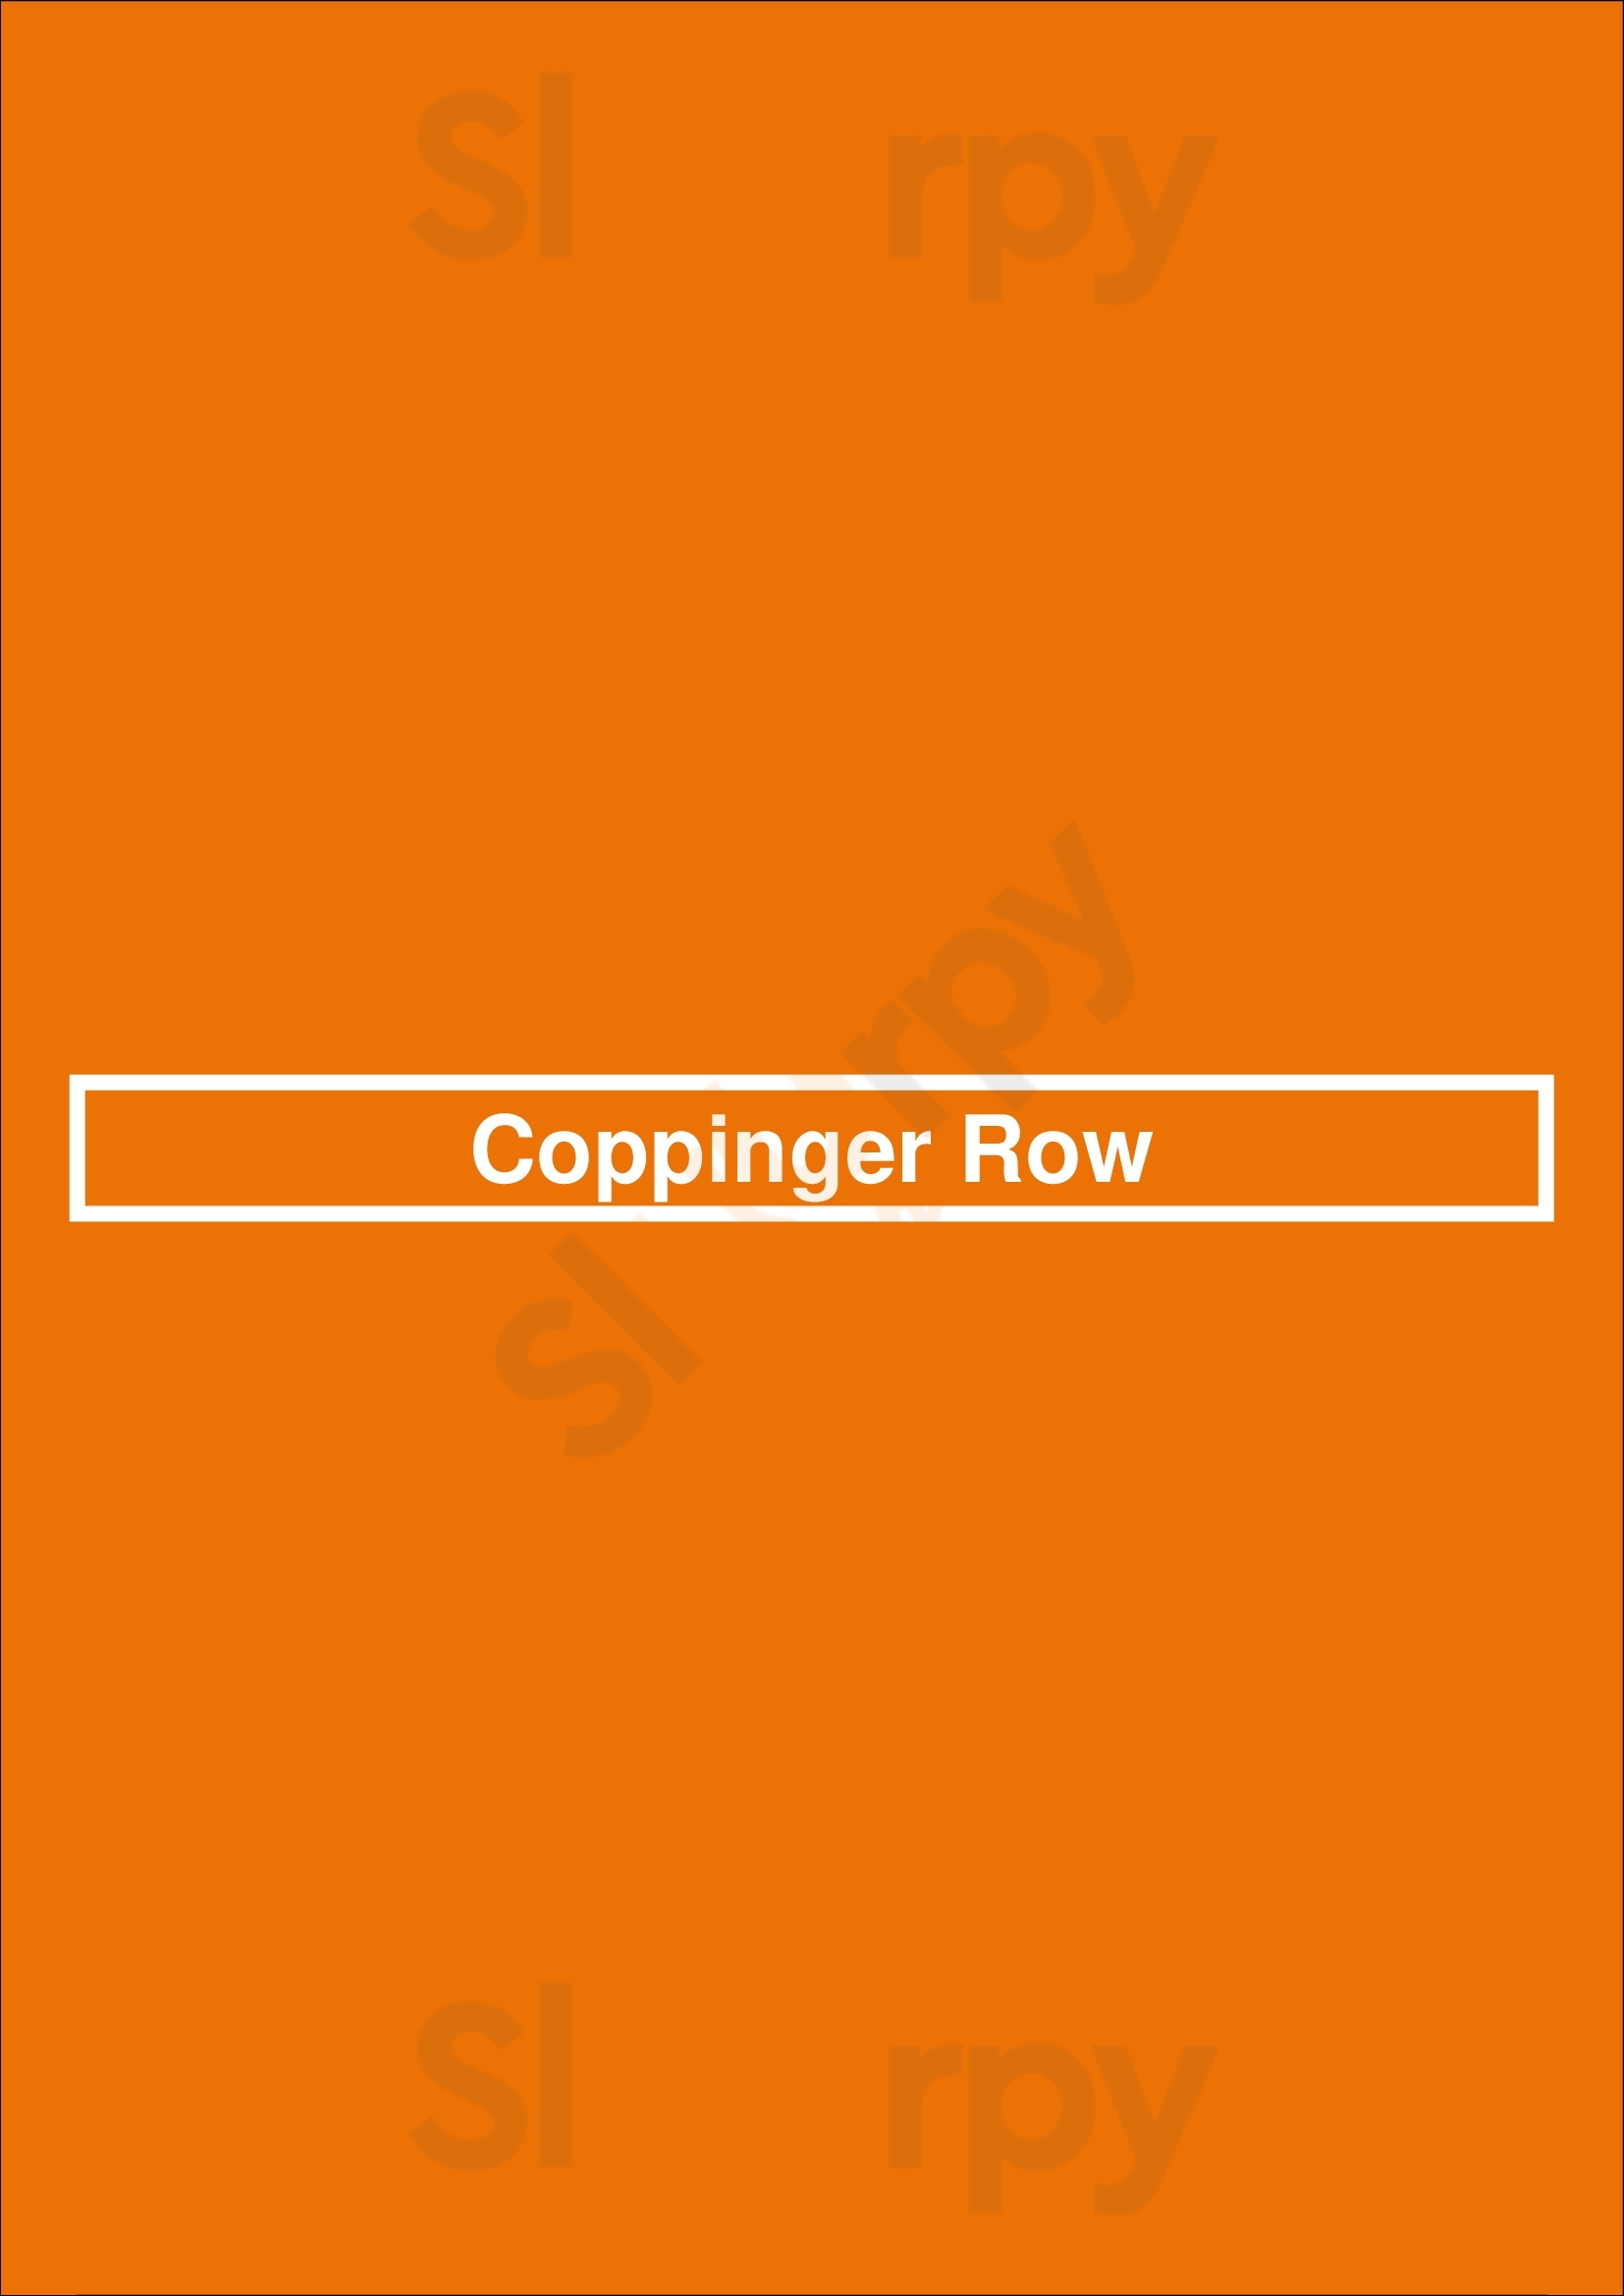 Coppinger Row Dublin Menu - 1